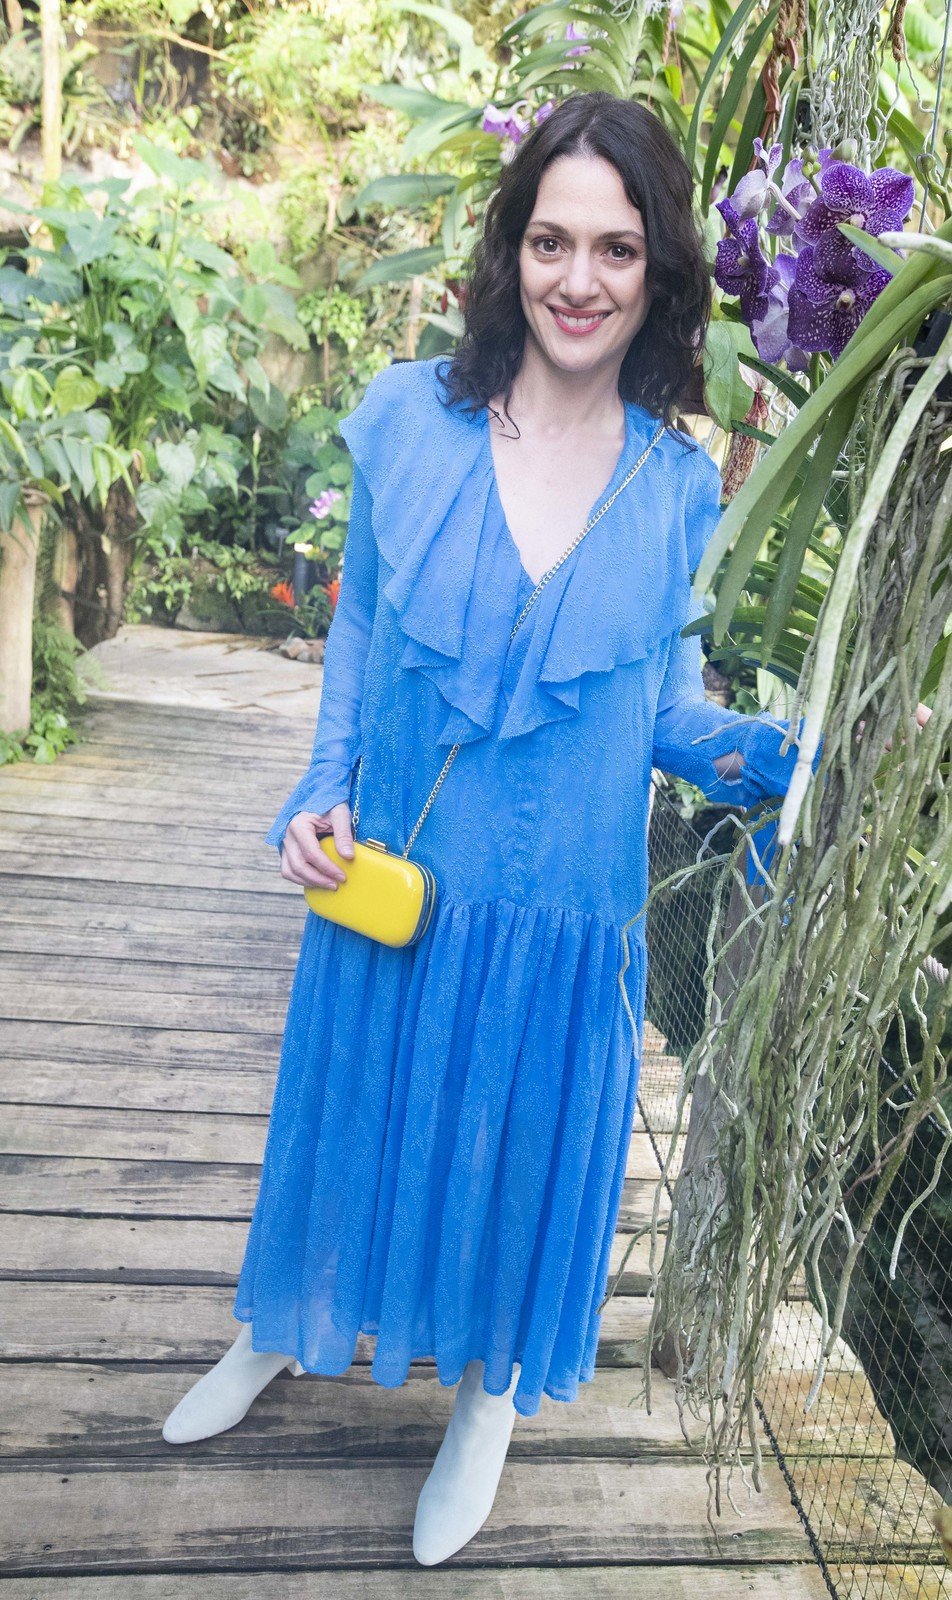 Herečka Klára Issová svůj model vyladila do ukrajinských barev.